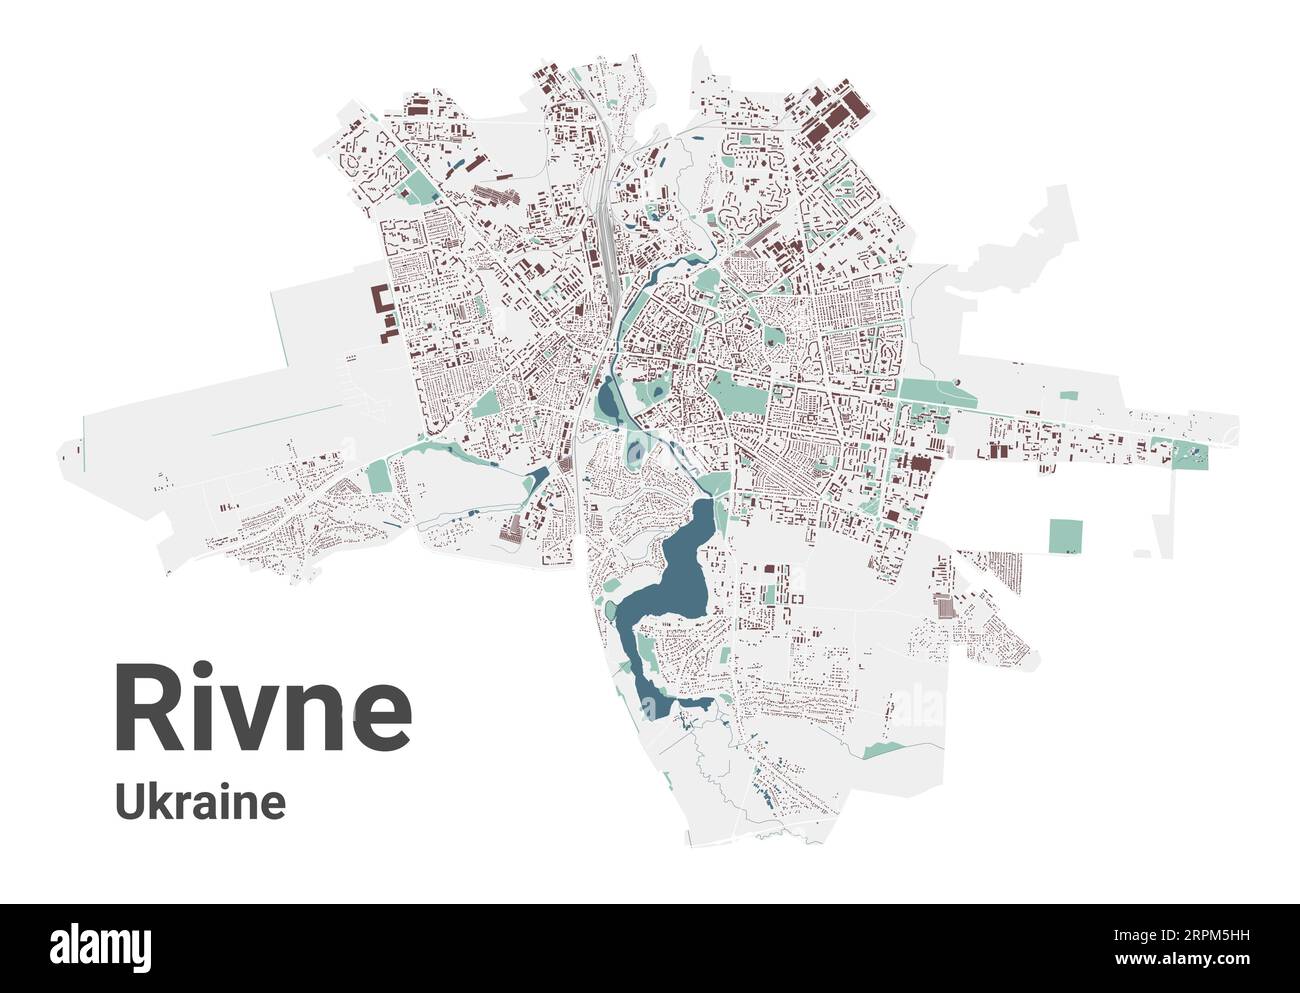 Carte de Rivne, ville en Ukraine. Carte de la zone administrative municipale avec les bâtiments, les rivières et les routes, les parcs et les voies ferrées. Illustration vectorielle. Illustration de Vecteur